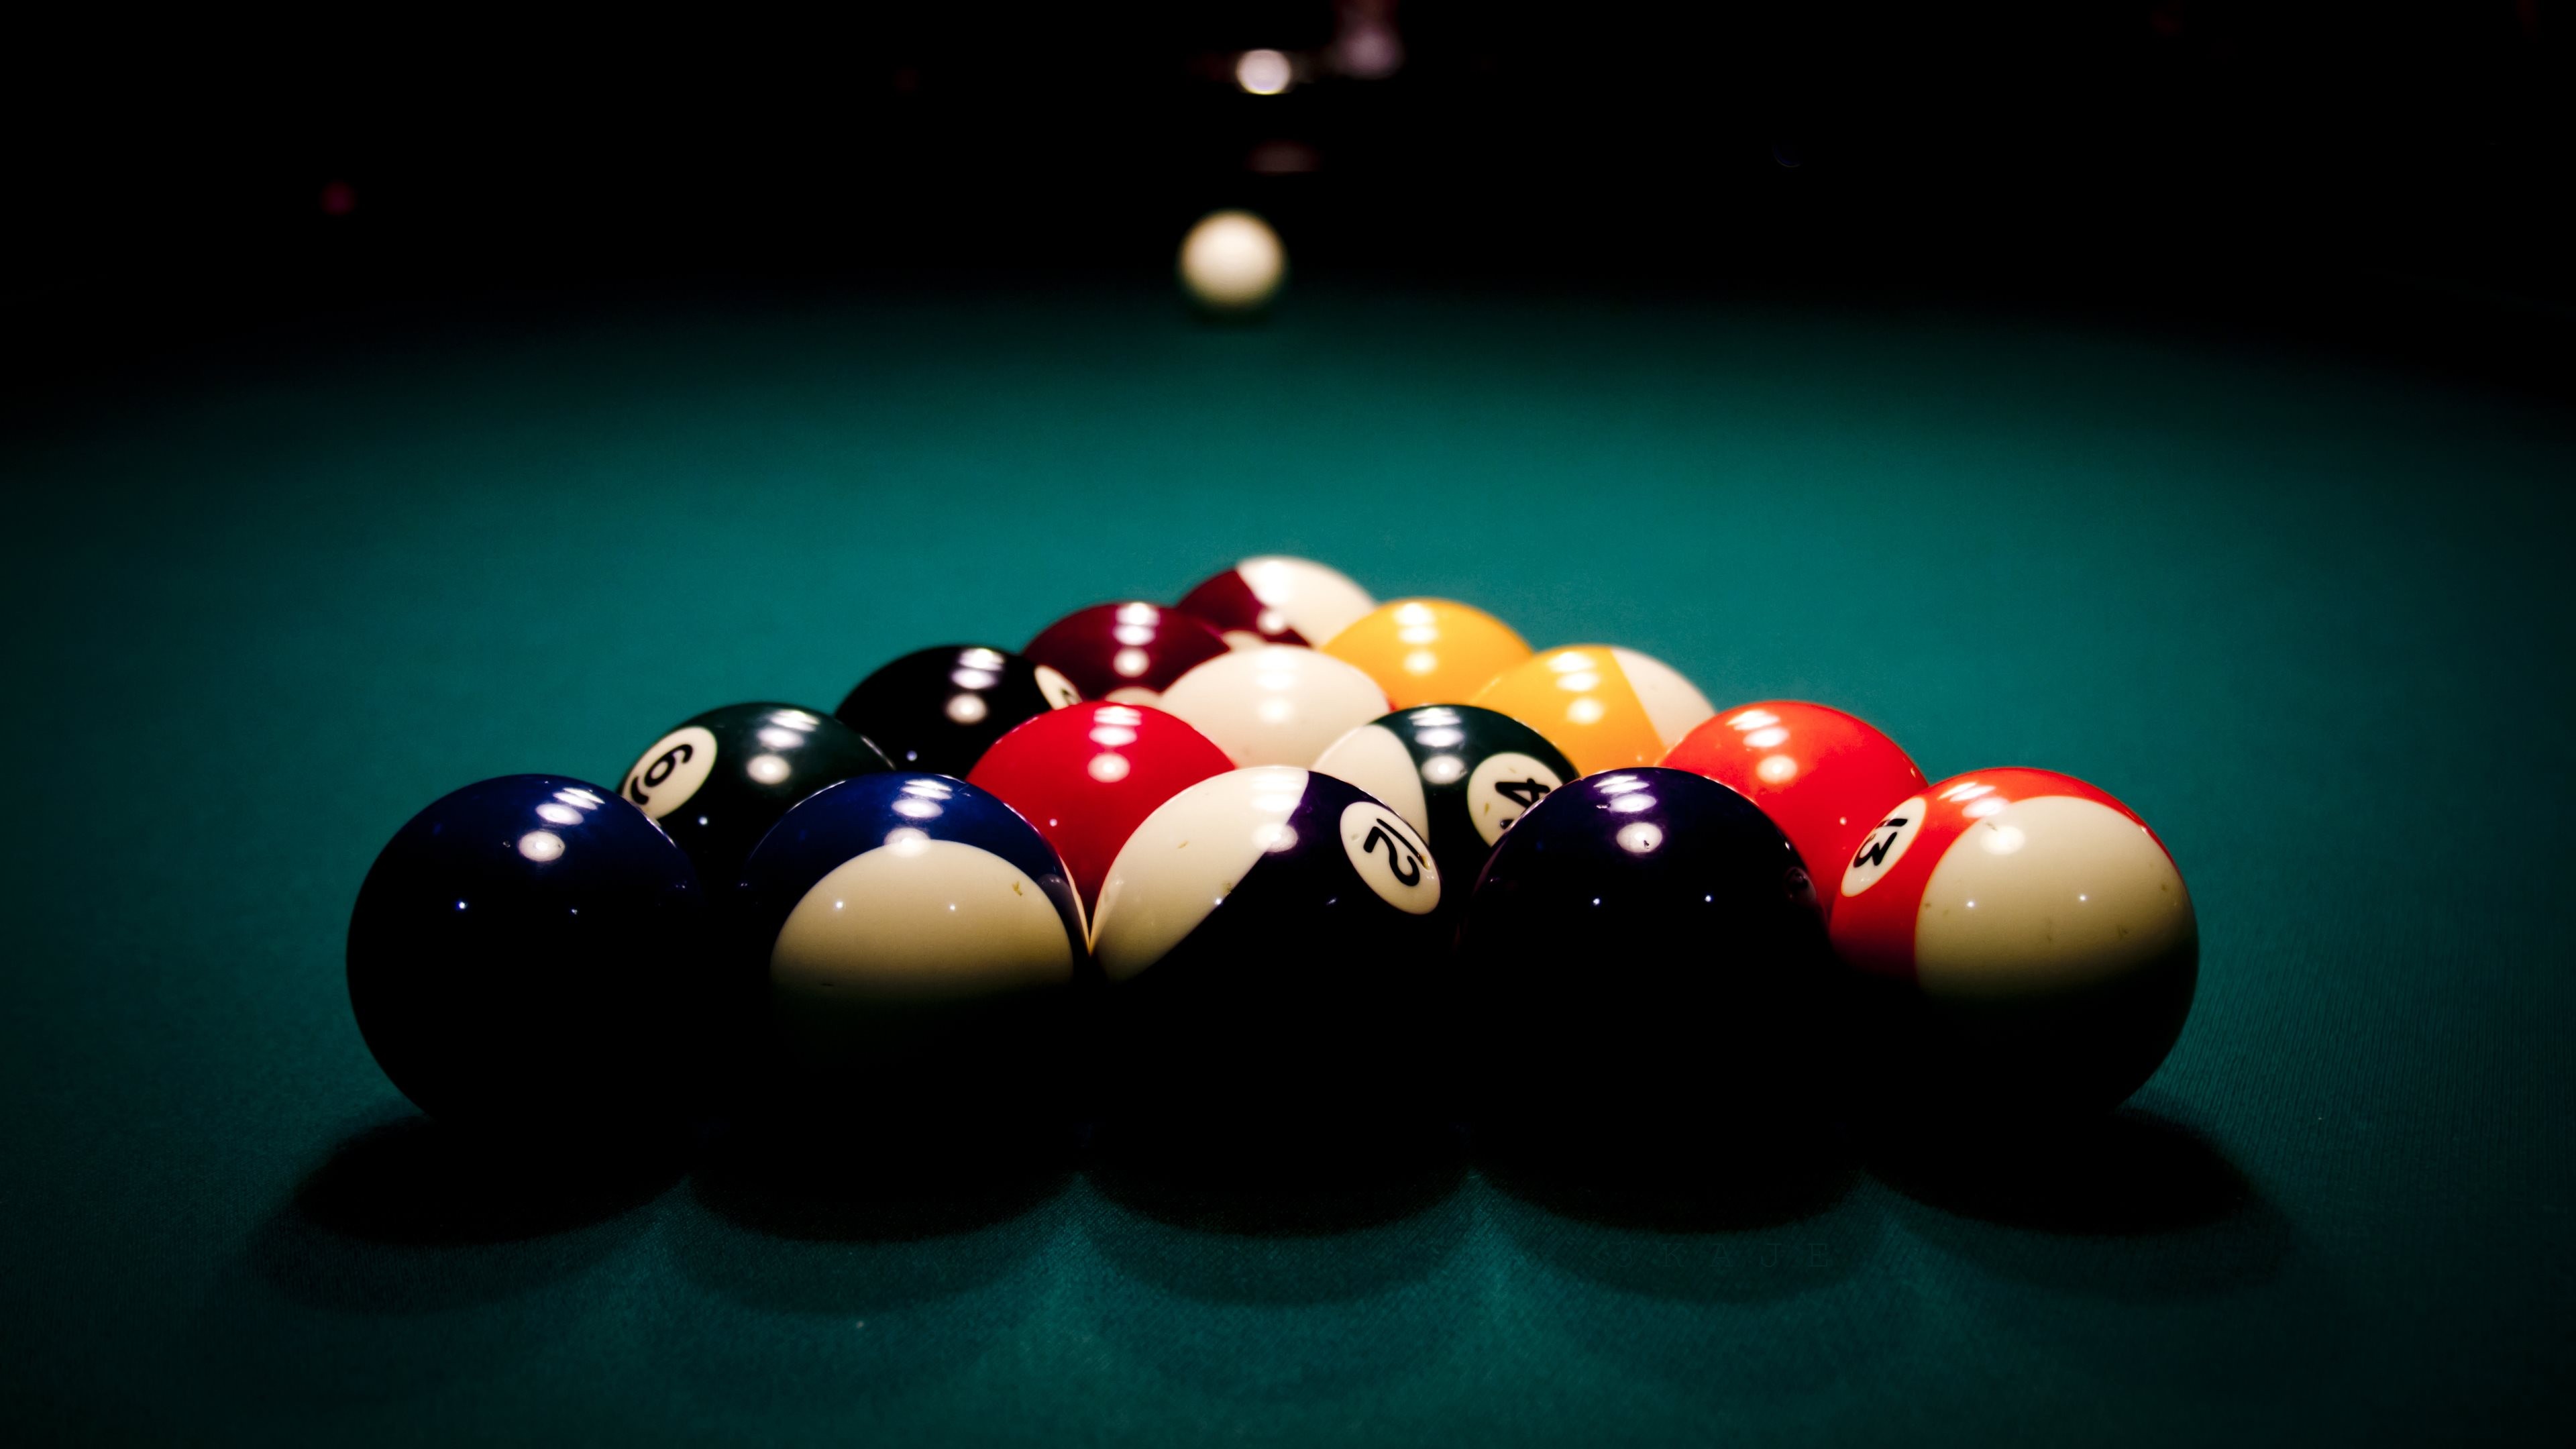 Billiard Balls Billiards Numbers Pool Table Pool Balls Green Dark 3840x2160